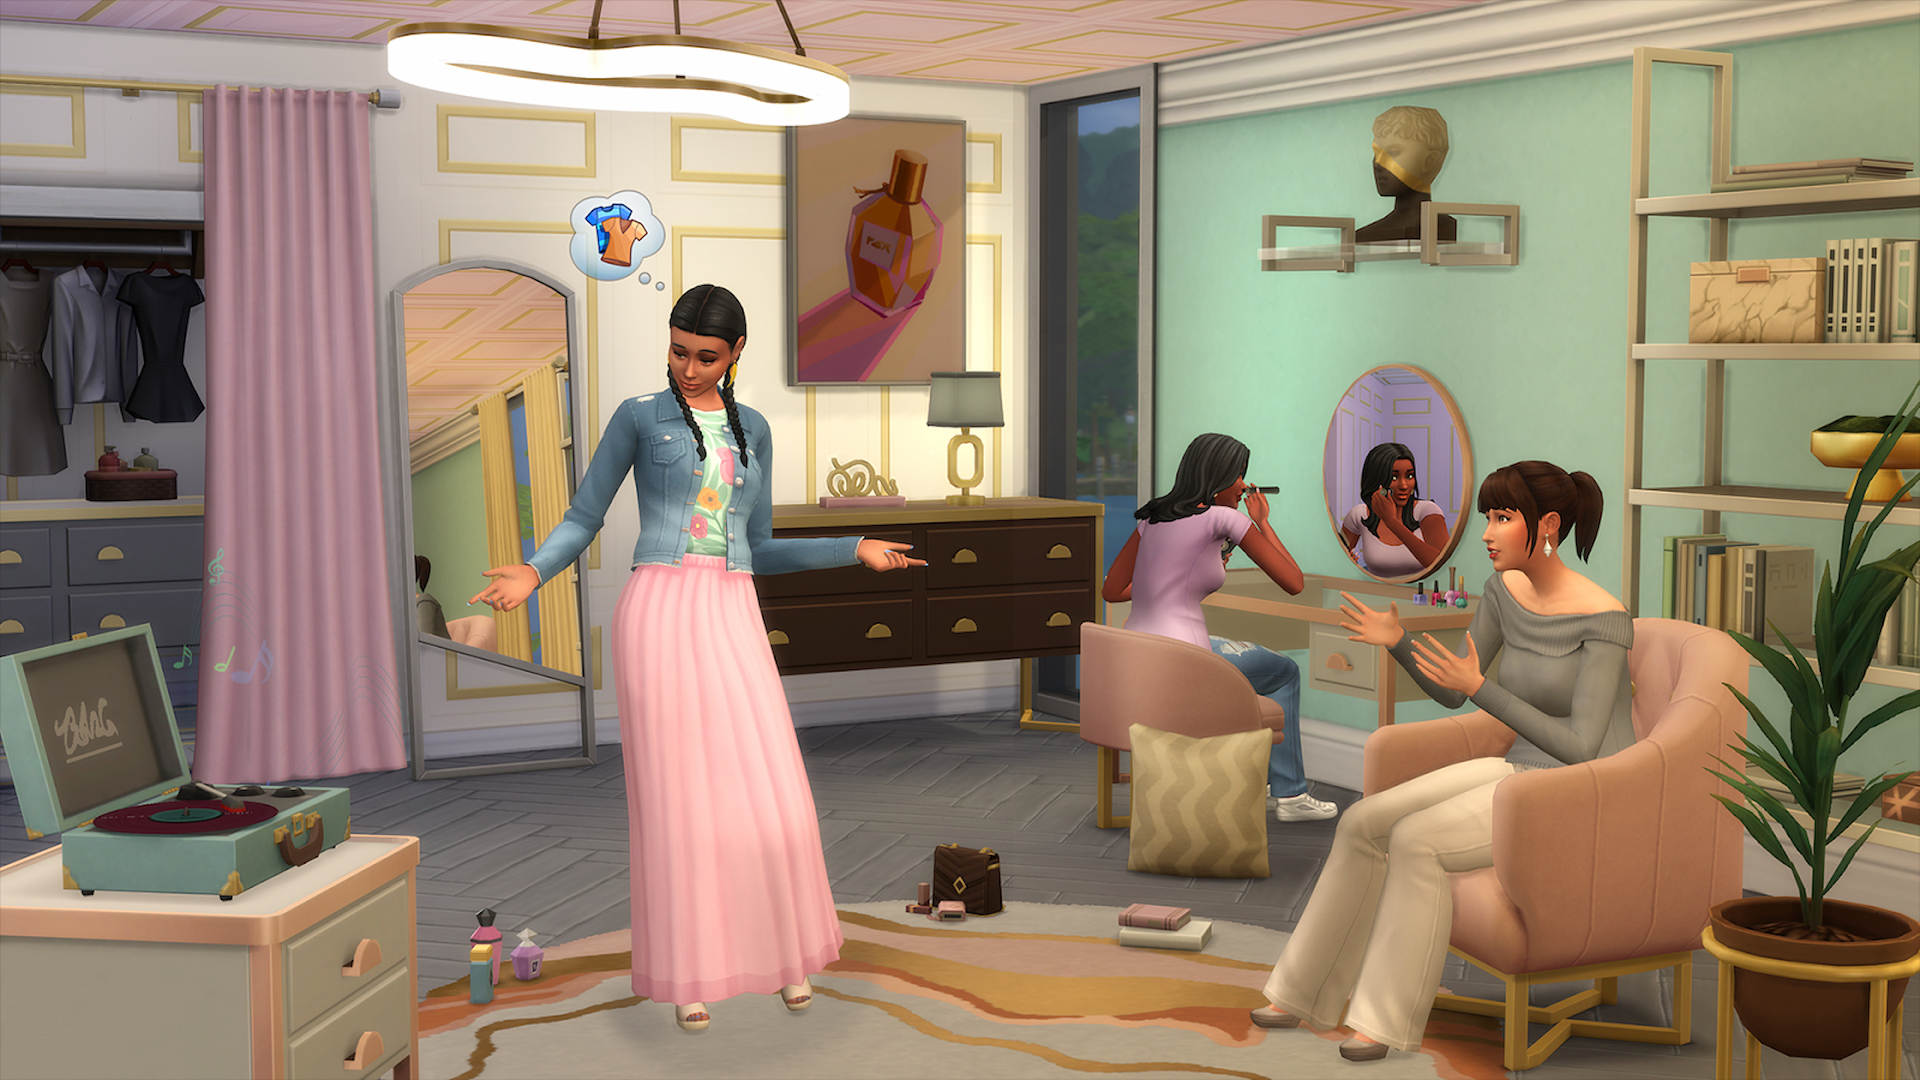 Capture d'écran du Kit Sims 4 Modern Luxe montrant des Sims dans une boutique, essayant des vêtements et se maquillant